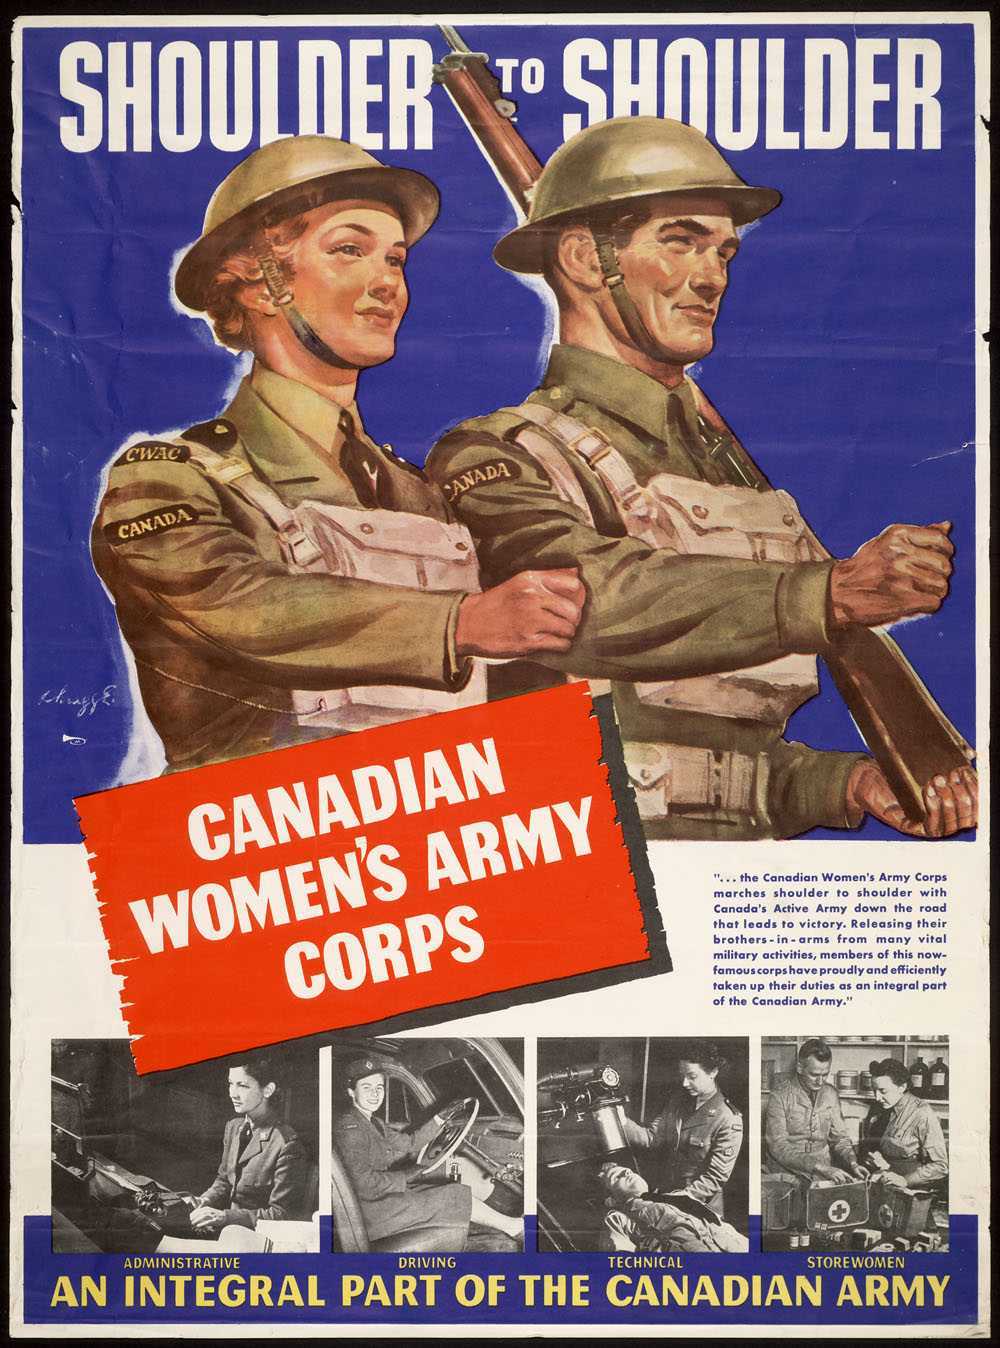 Affiche illustrée en couleur – Un homme et une femme tous deux en uniforme militaire défilent côte à côte. Lui seul porte une arme. Figurent ci-dessous quatre photos montrant différents rôles confiés à une femme militaire (outre le combat).